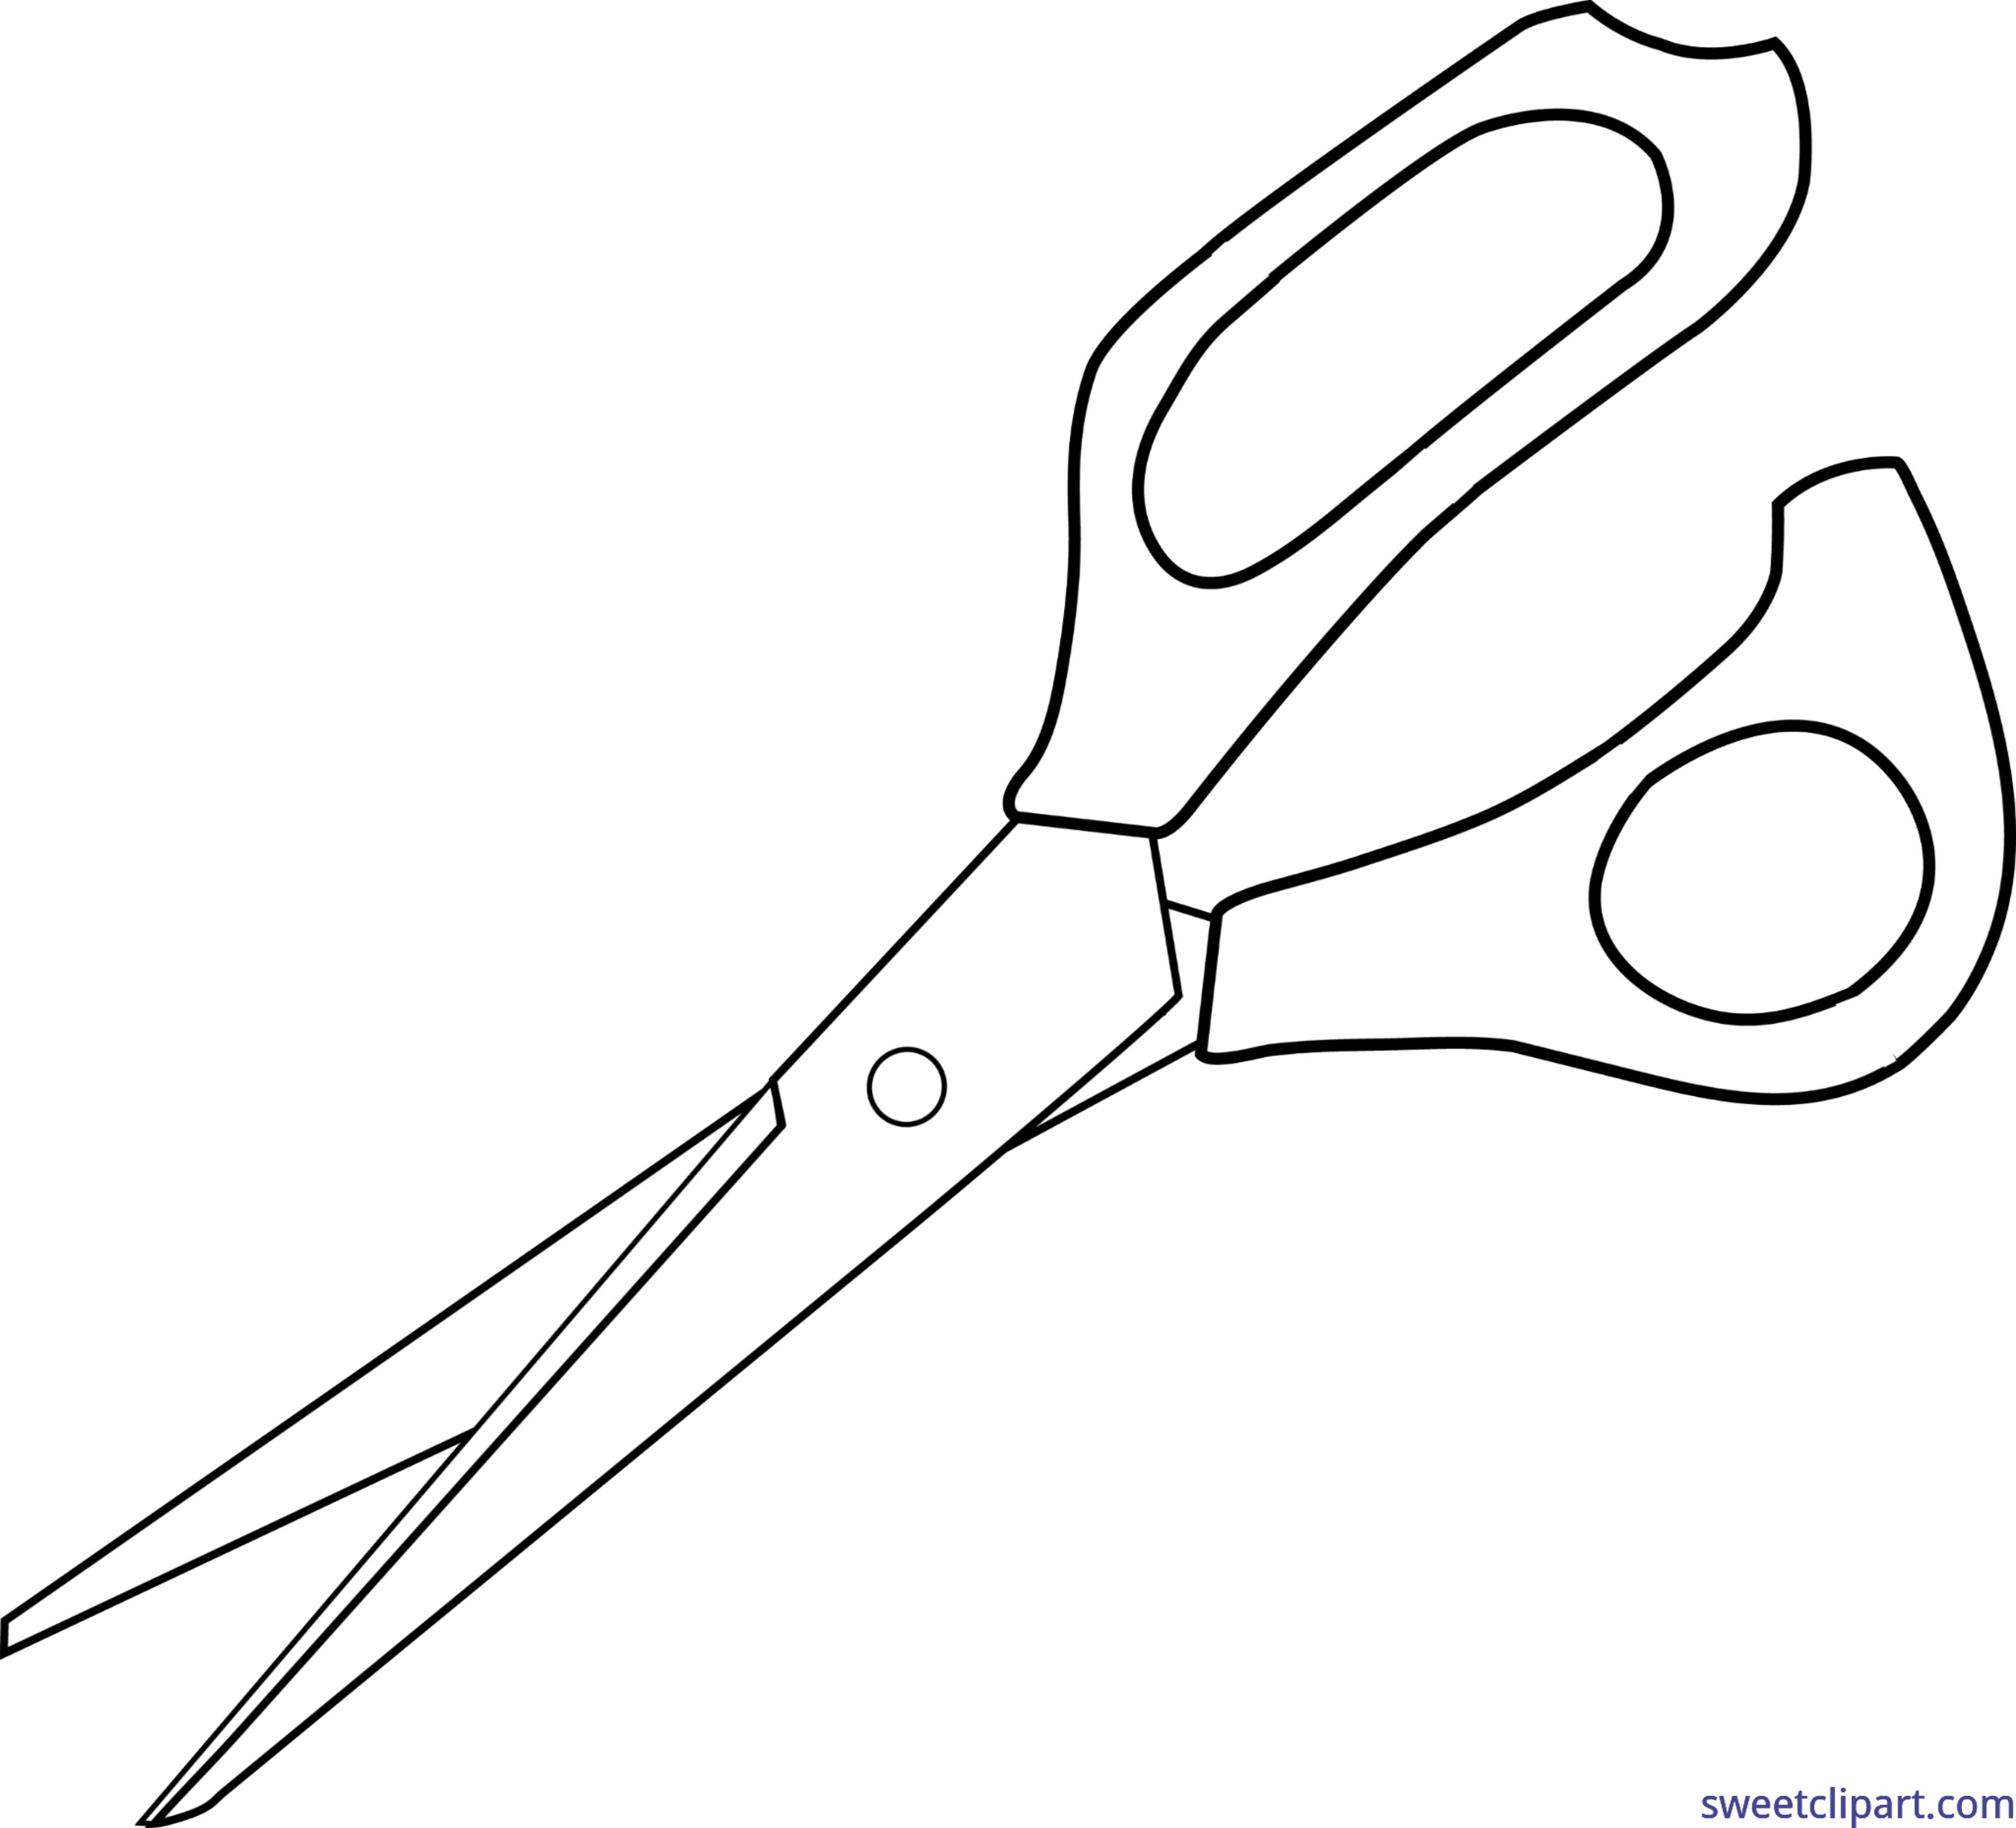 Clipart scissors tumblr transparent. Simple lineart clip art